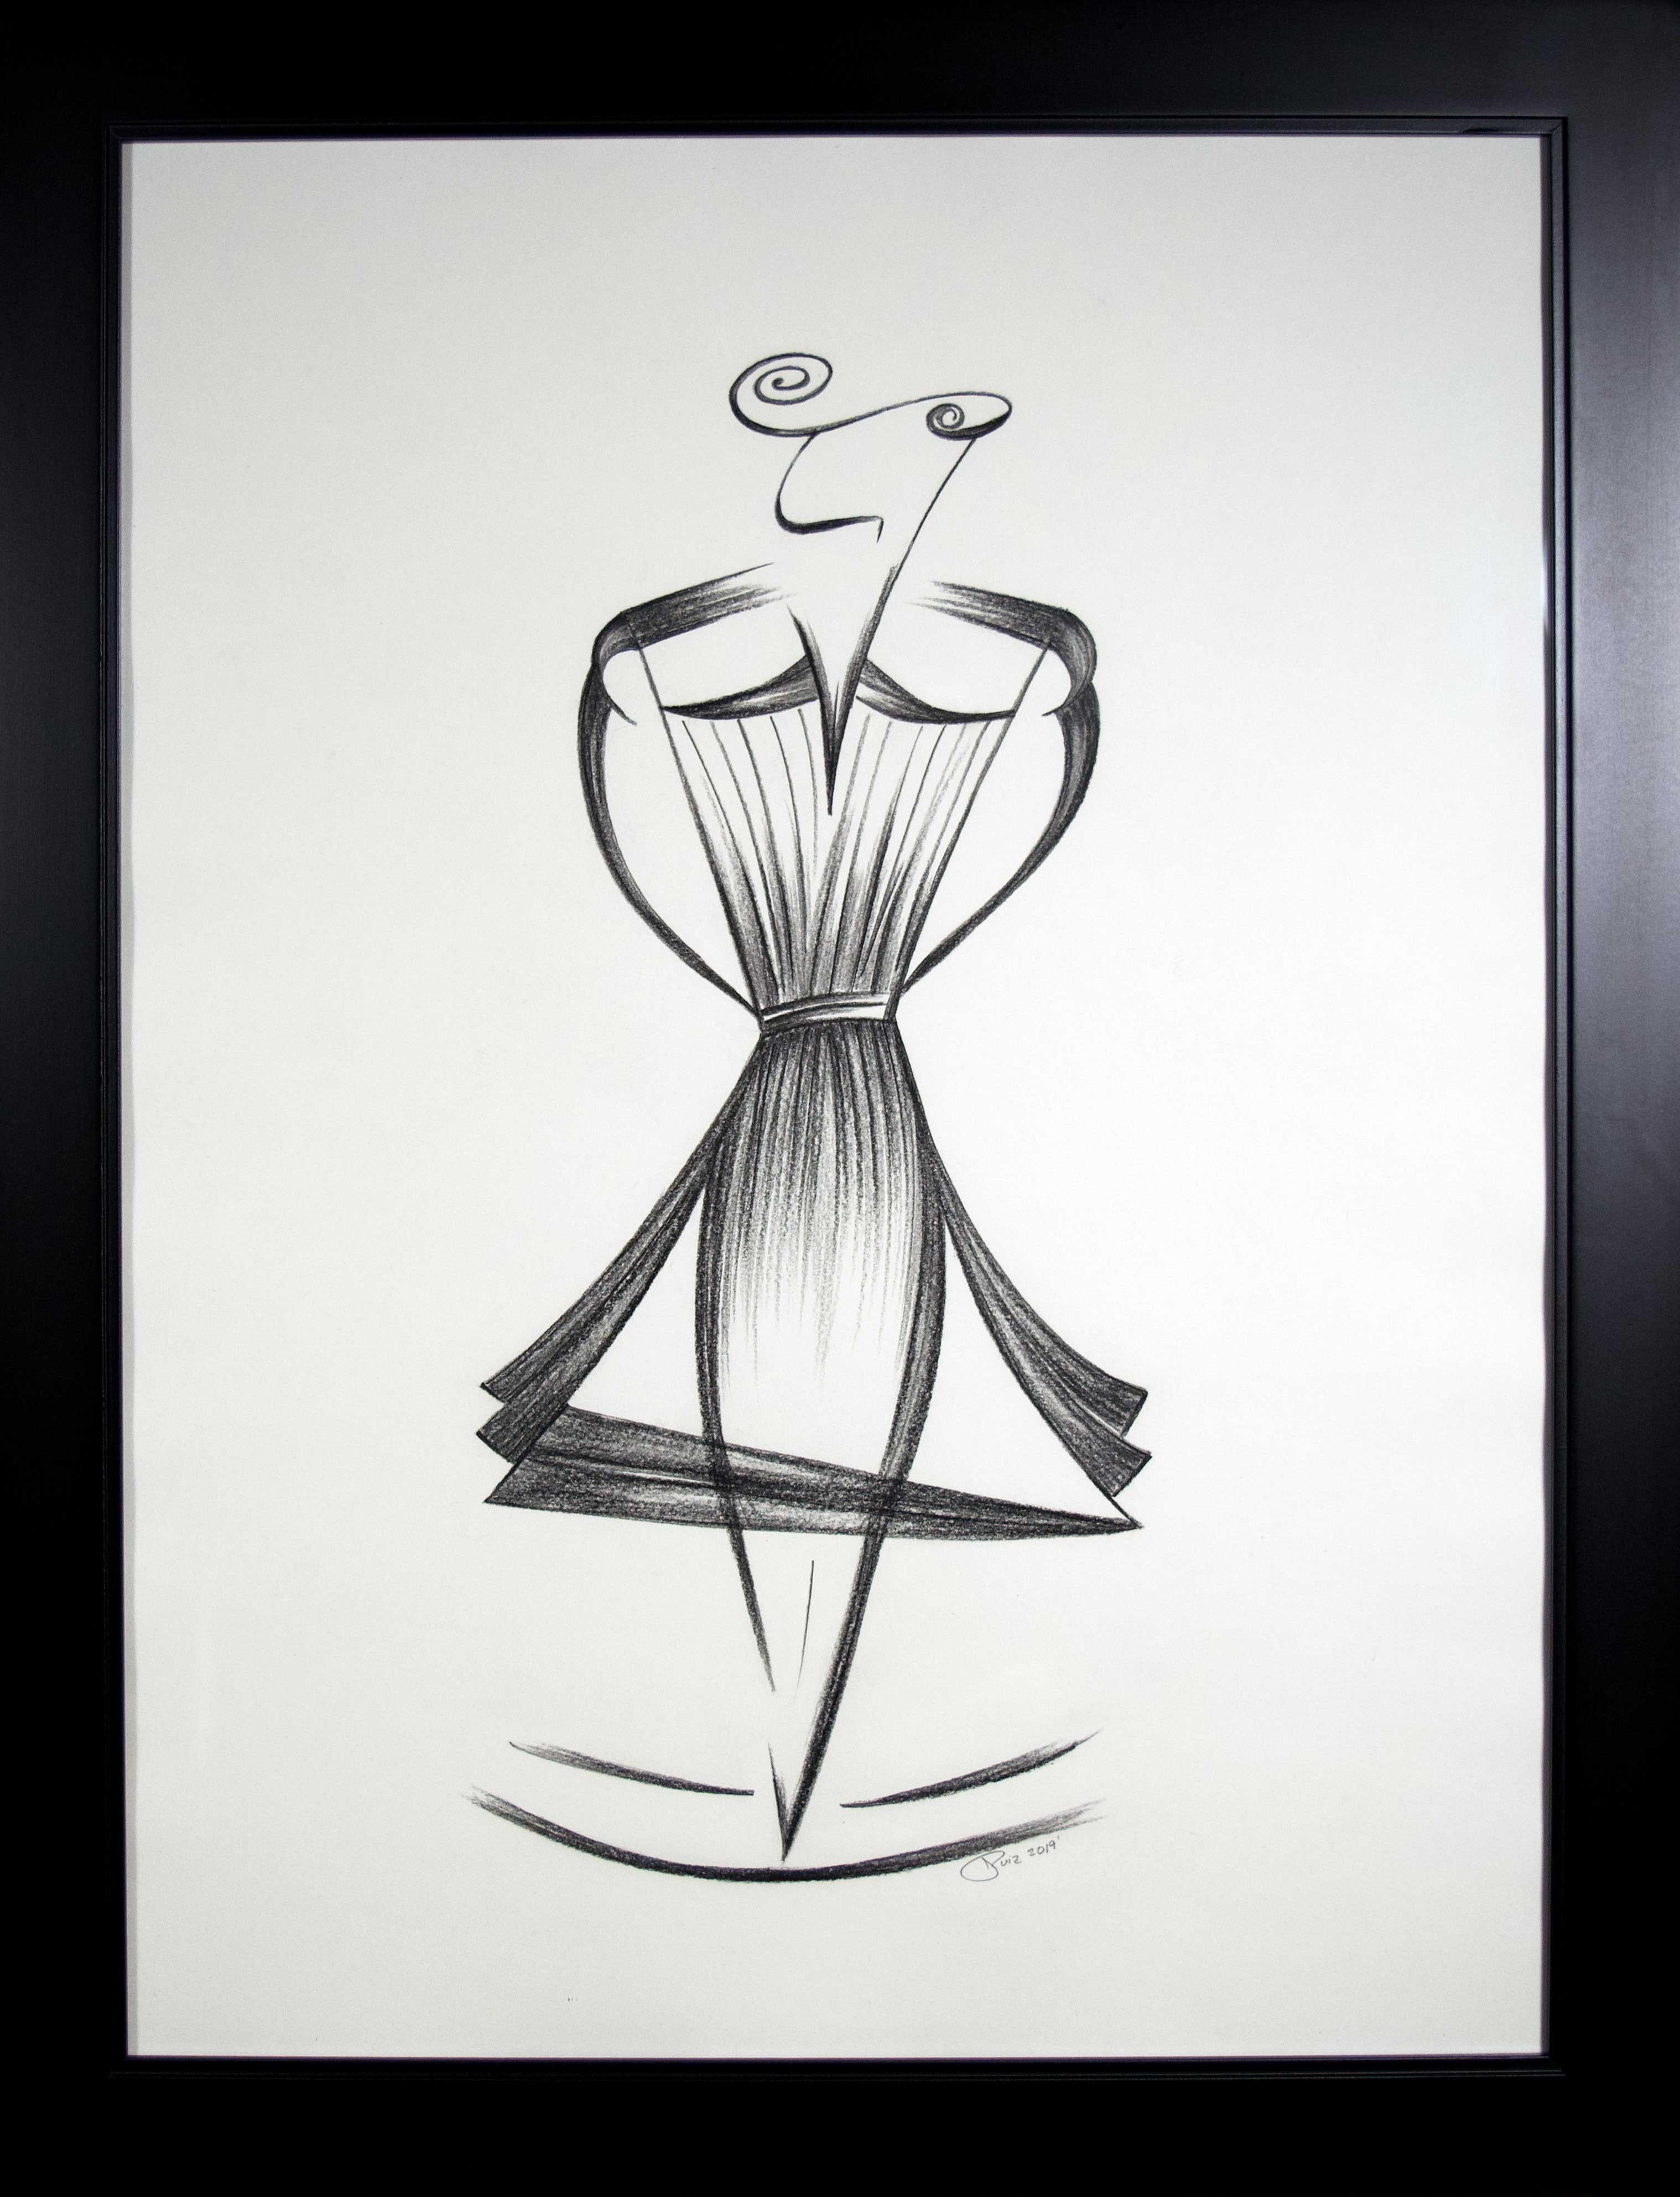 Mid-Century Art Deco Minimalismus Schwarz-Weiß- weibliche Figur, lateinamerikanische Künstlerin, signiert